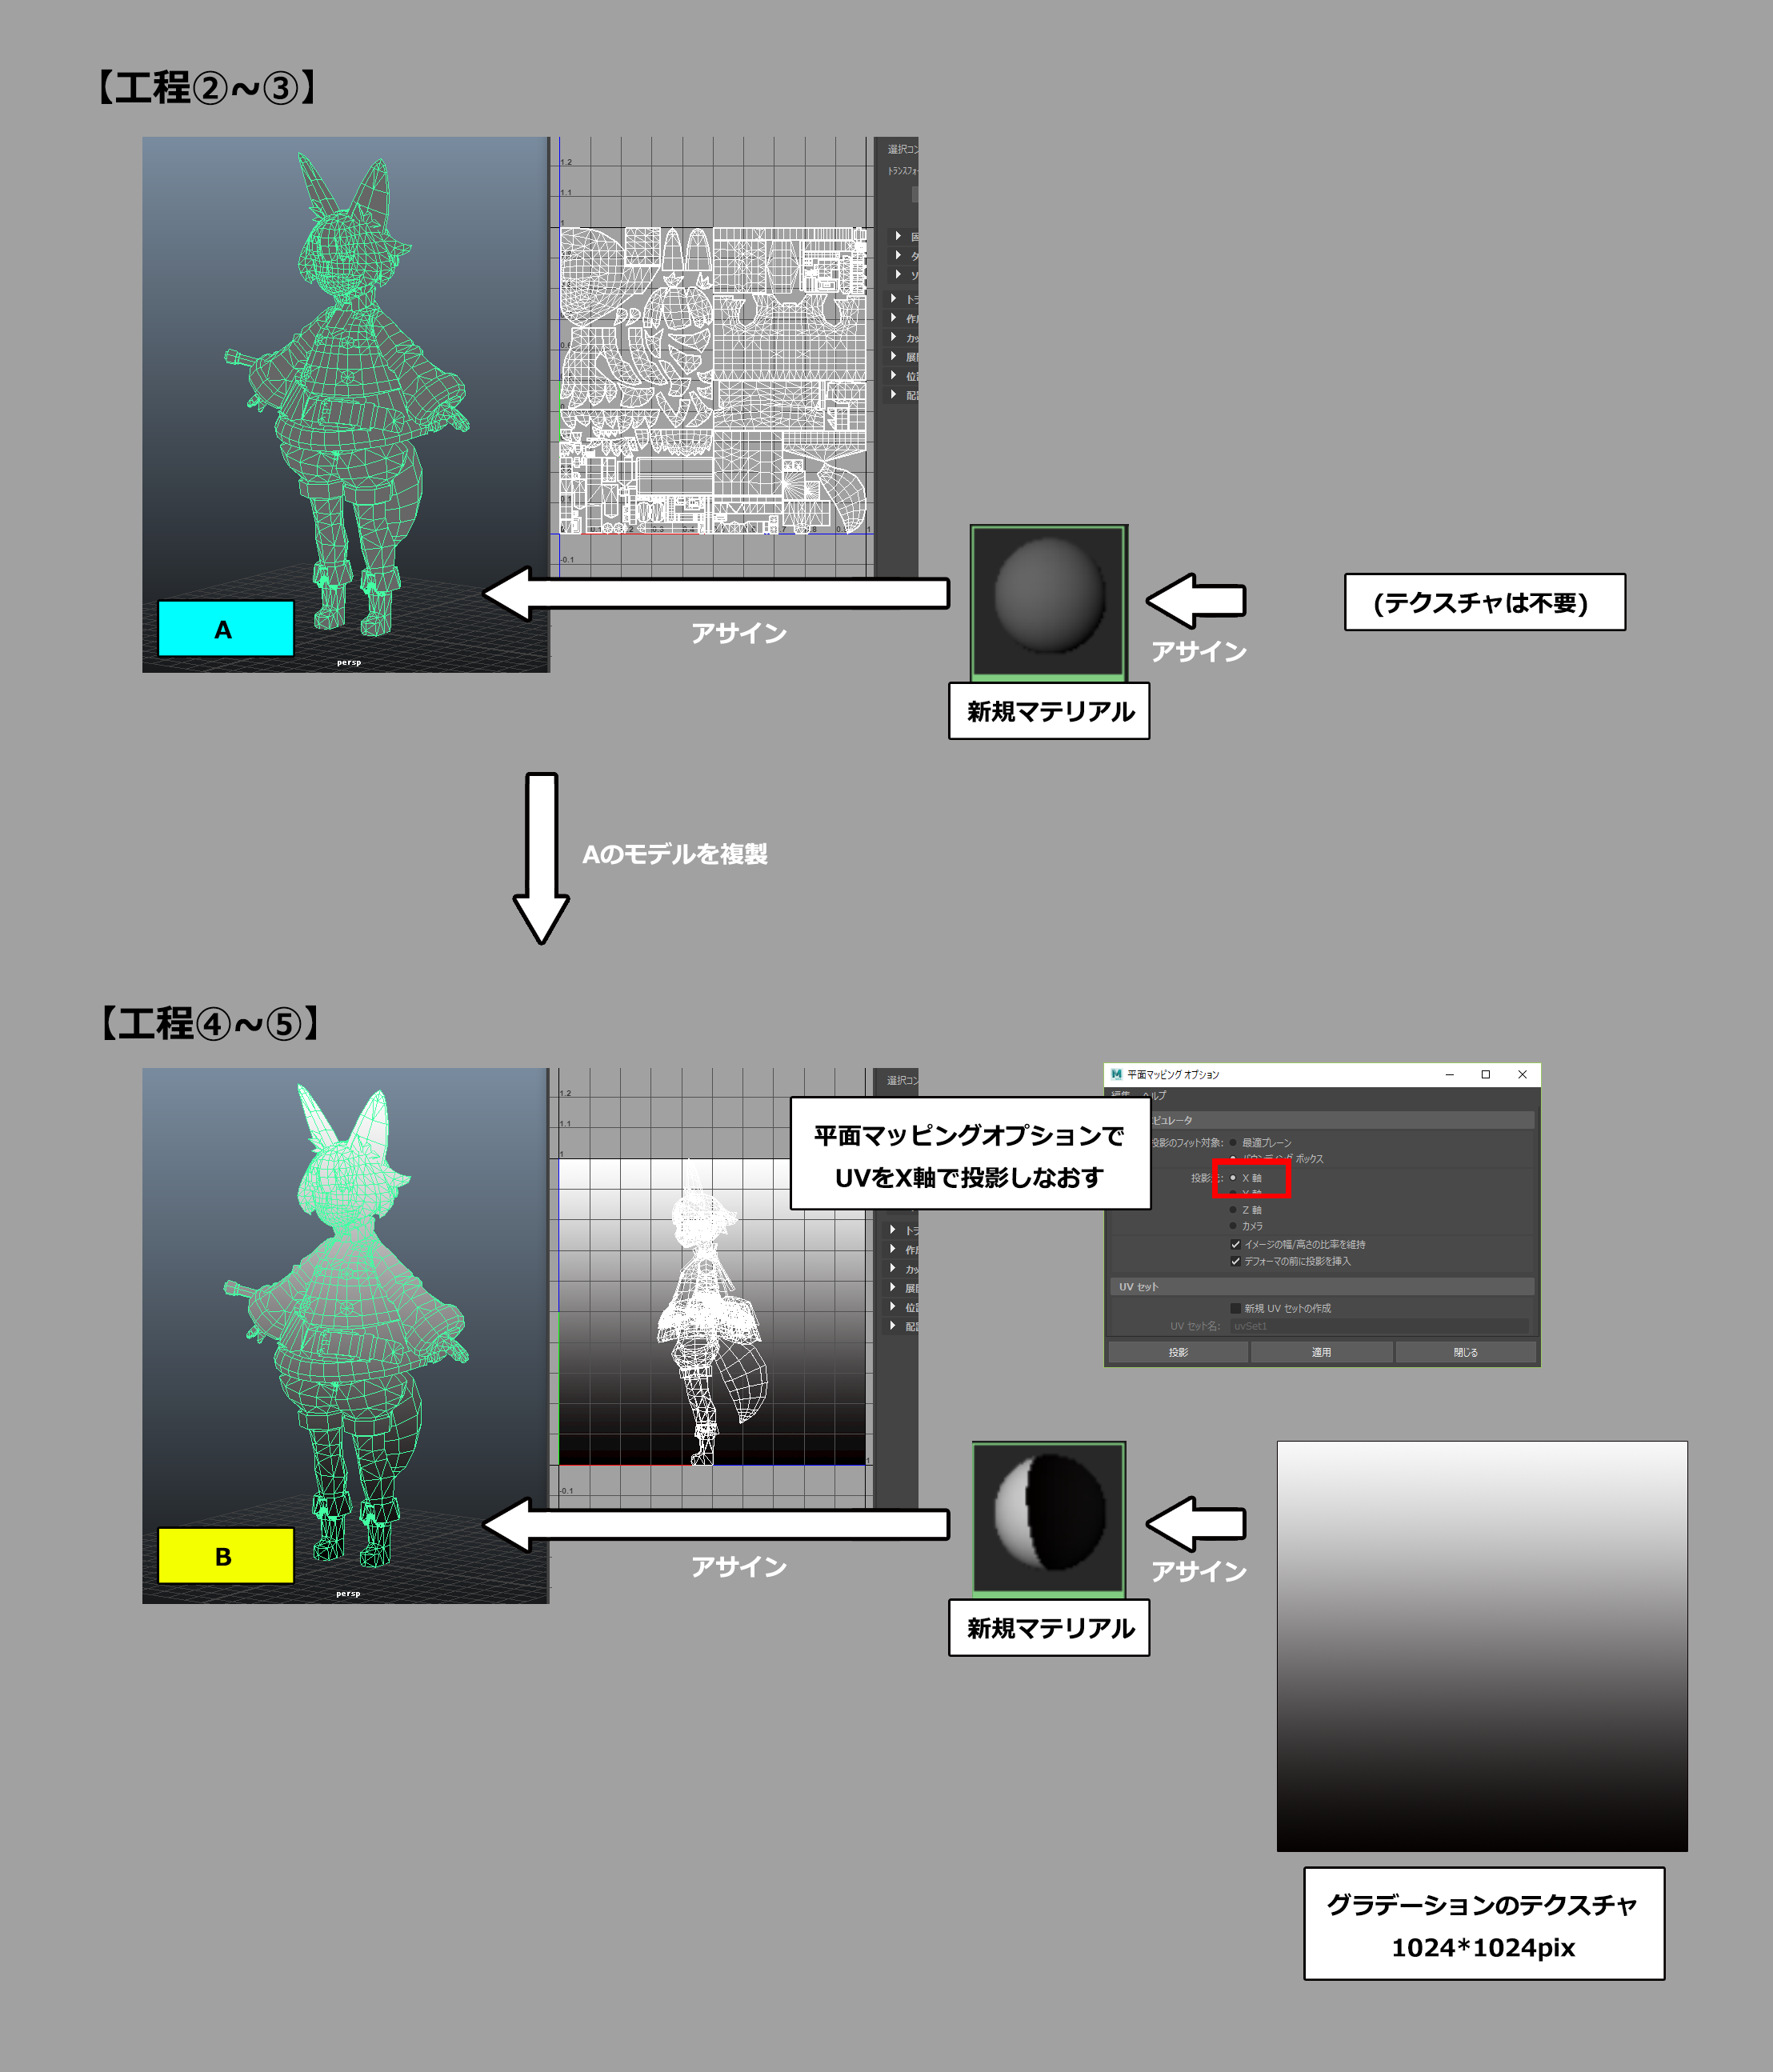 第5回 テクスチャの作成 Mayaで始めるゲーム用ローポリキャラモデル Area Japan